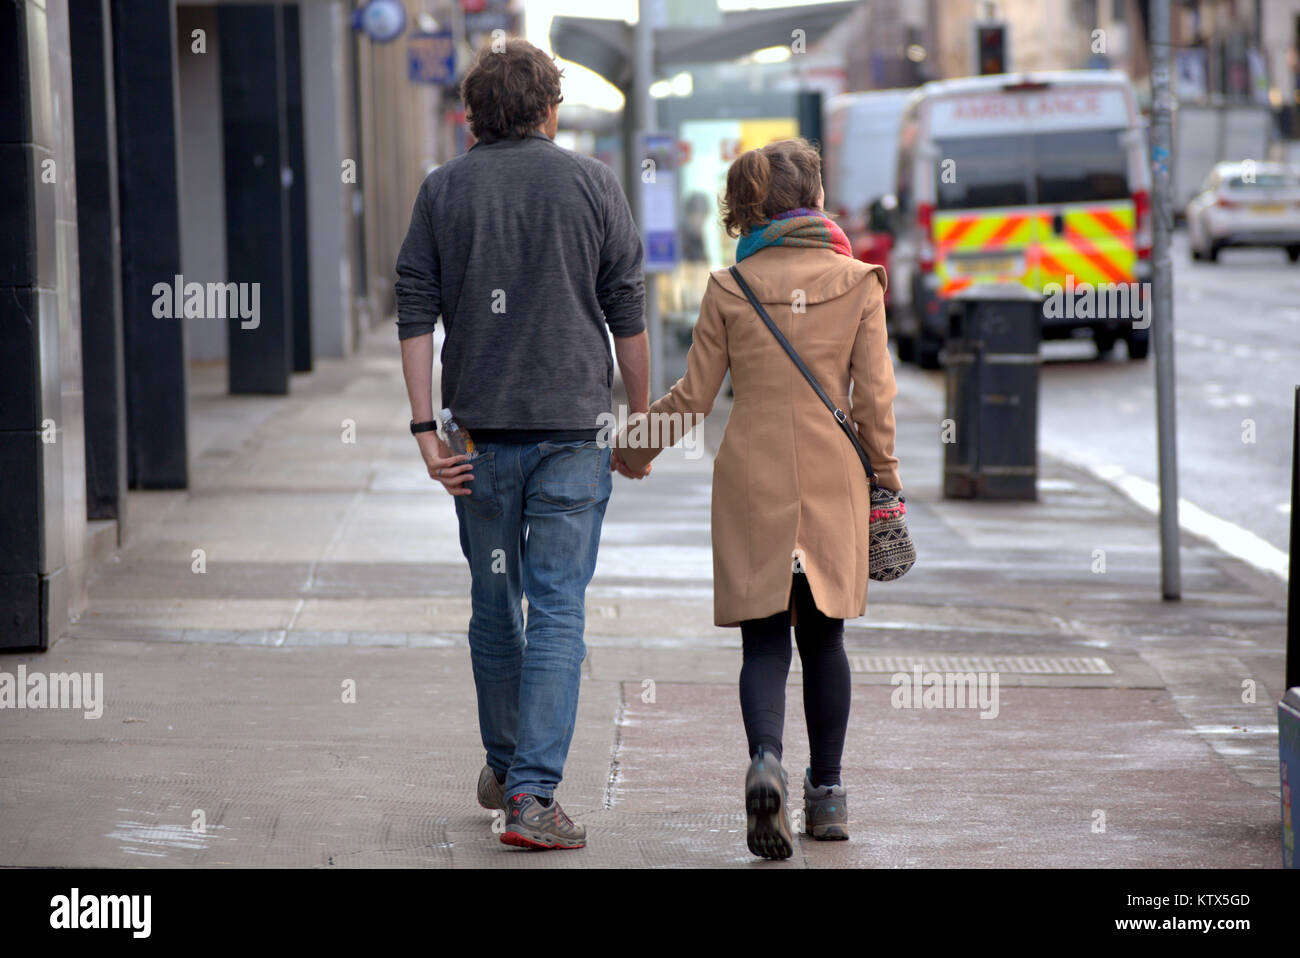 Gritty urbana calle Sauchiehall Street, Glasgow vida pareja joven, un chico y una chica sujetando manos caminando sobre una fecha en la acera, visto desde atrás Foto de stock